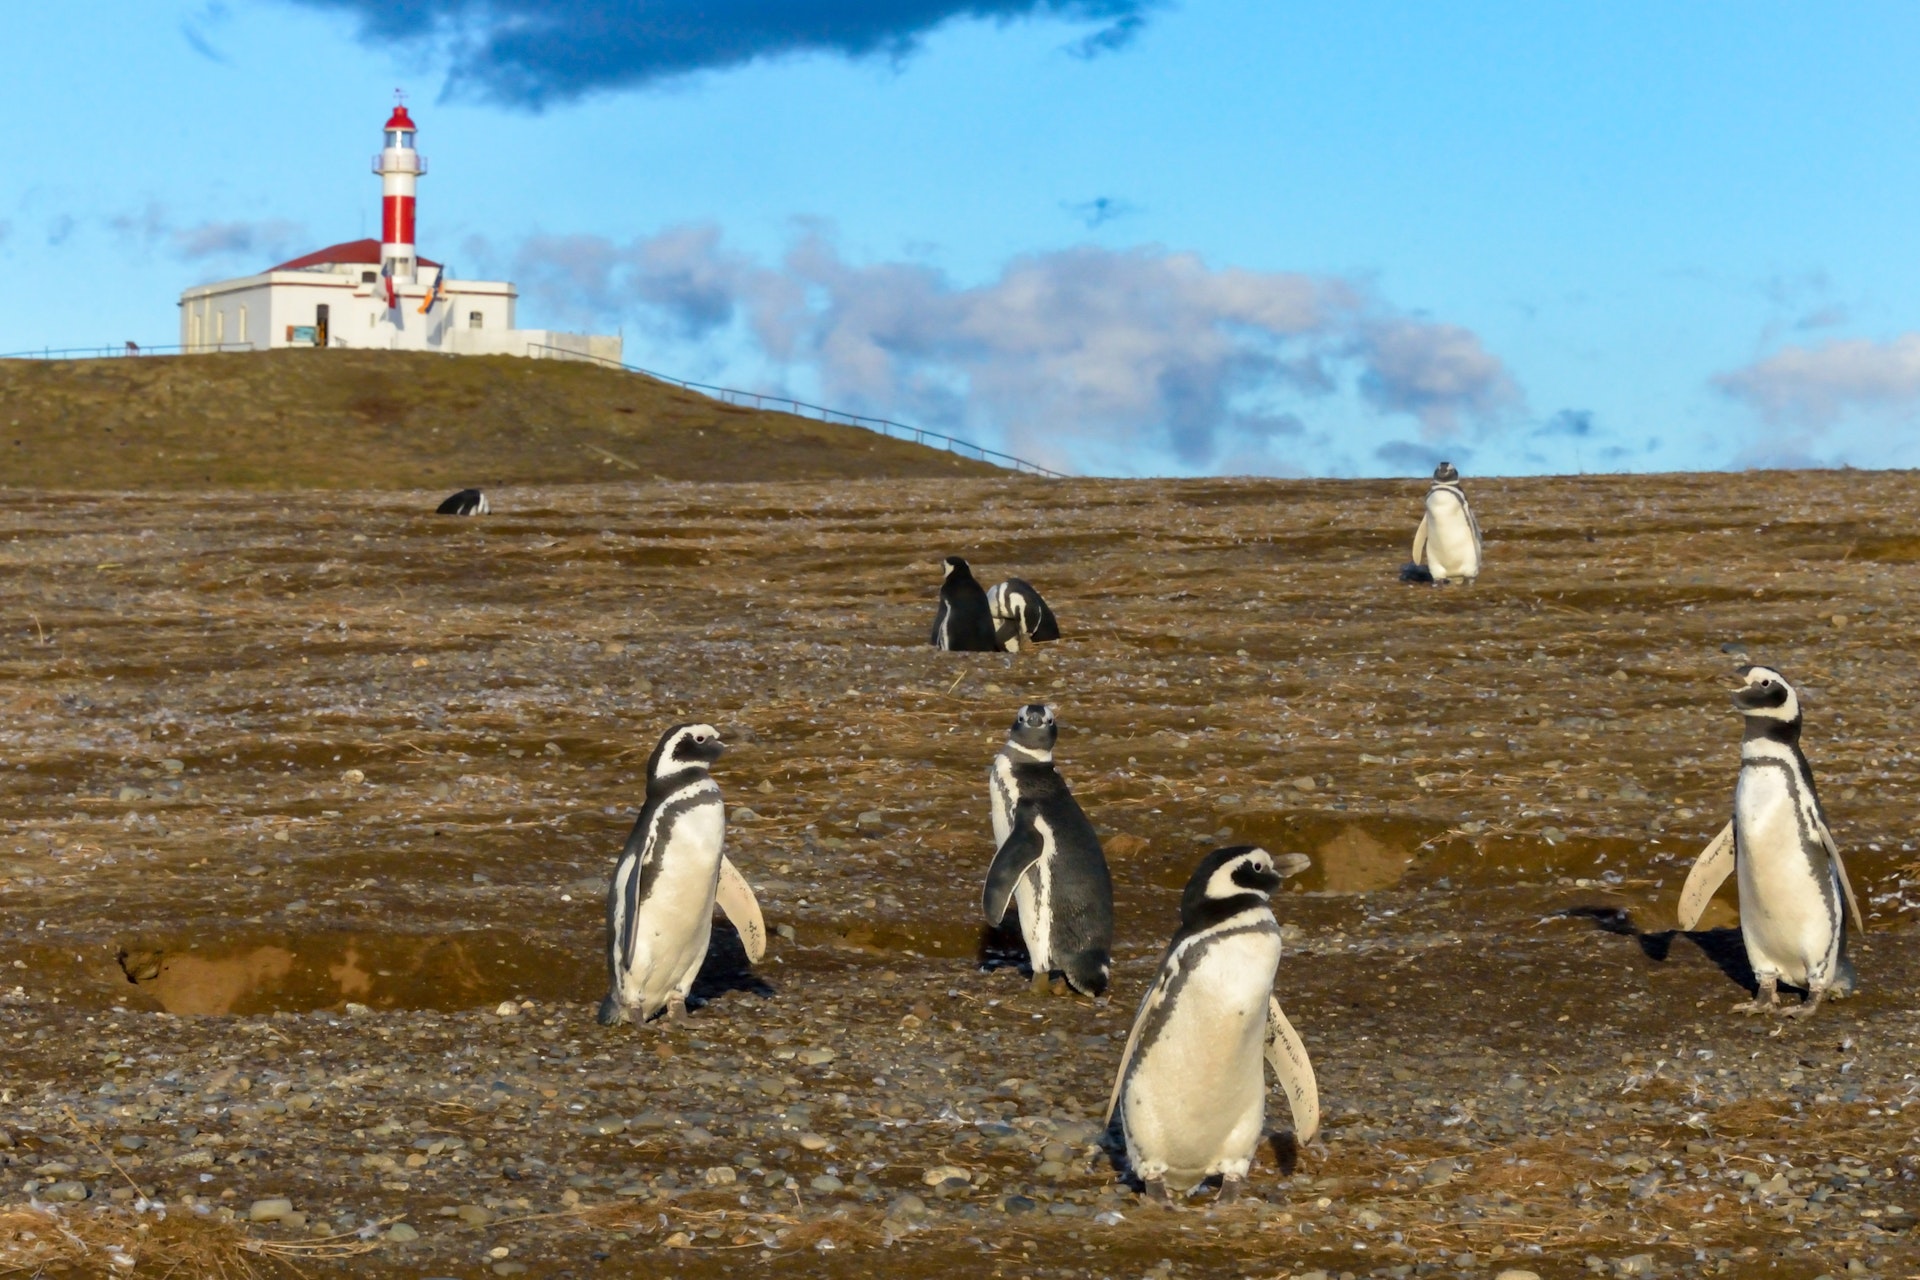  Kial nun estas la plej bona tempo por vidi pingvenojn en Patagonio (kaj aliaj bonegaj tempoj por viziti)